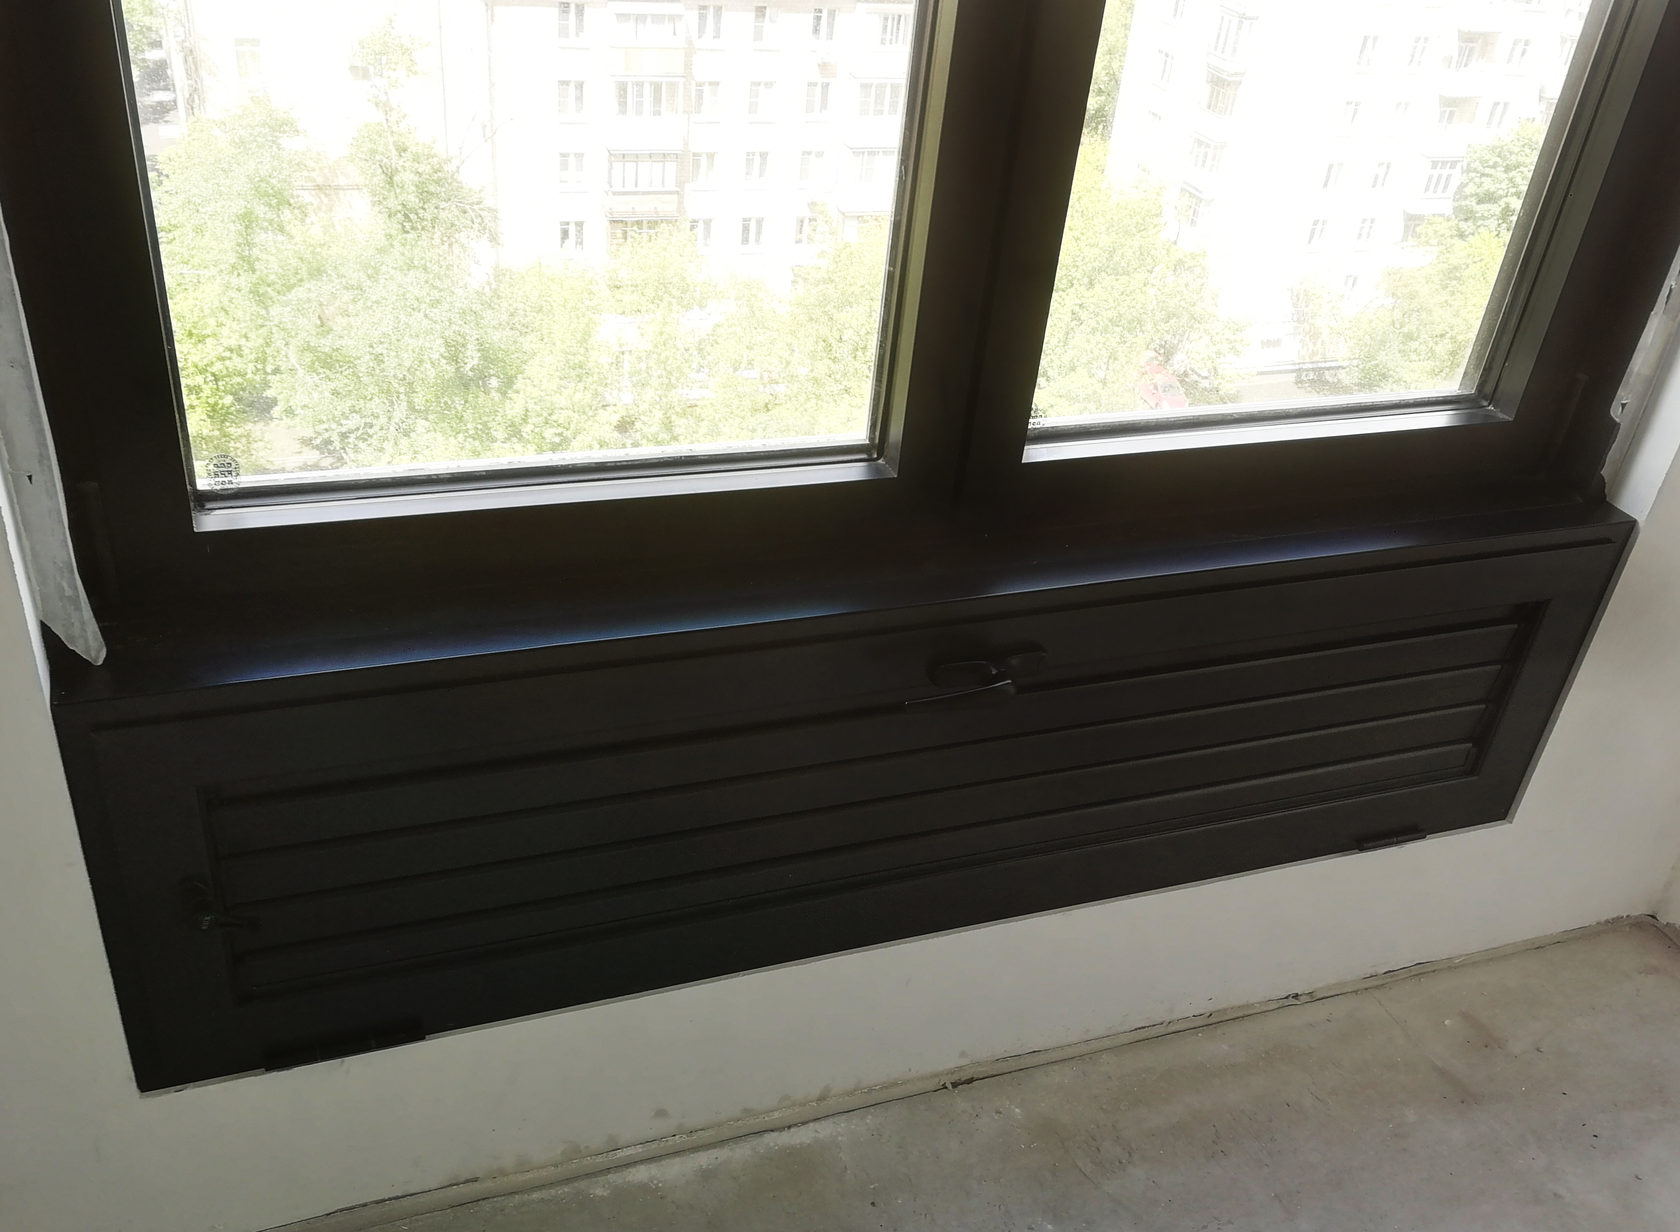 Замена нерегулируемой вентиляционной решетки на балконе. ЖК Царская Площадь